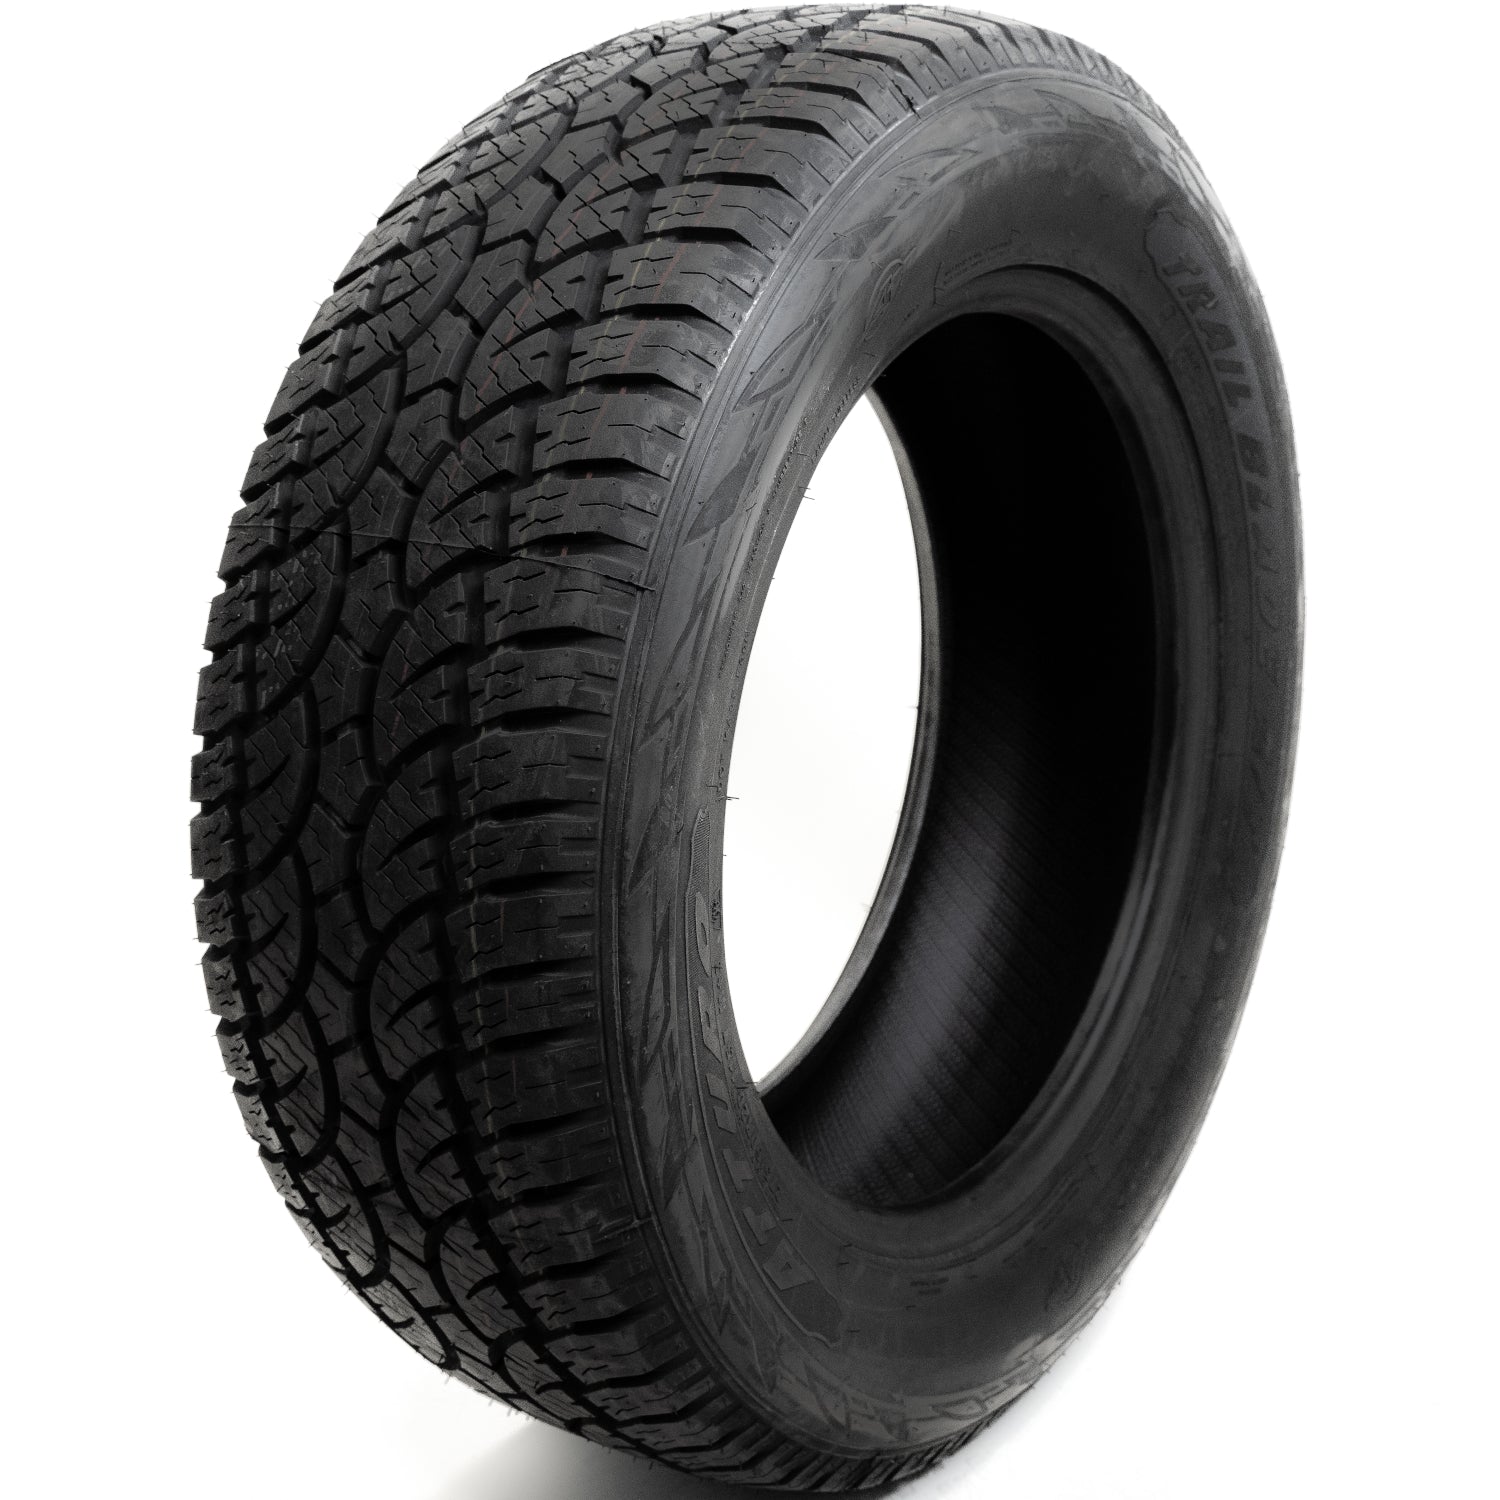 ATTURO TRAIL BLADE AT 275/60R20 (33X11R 20) Tires